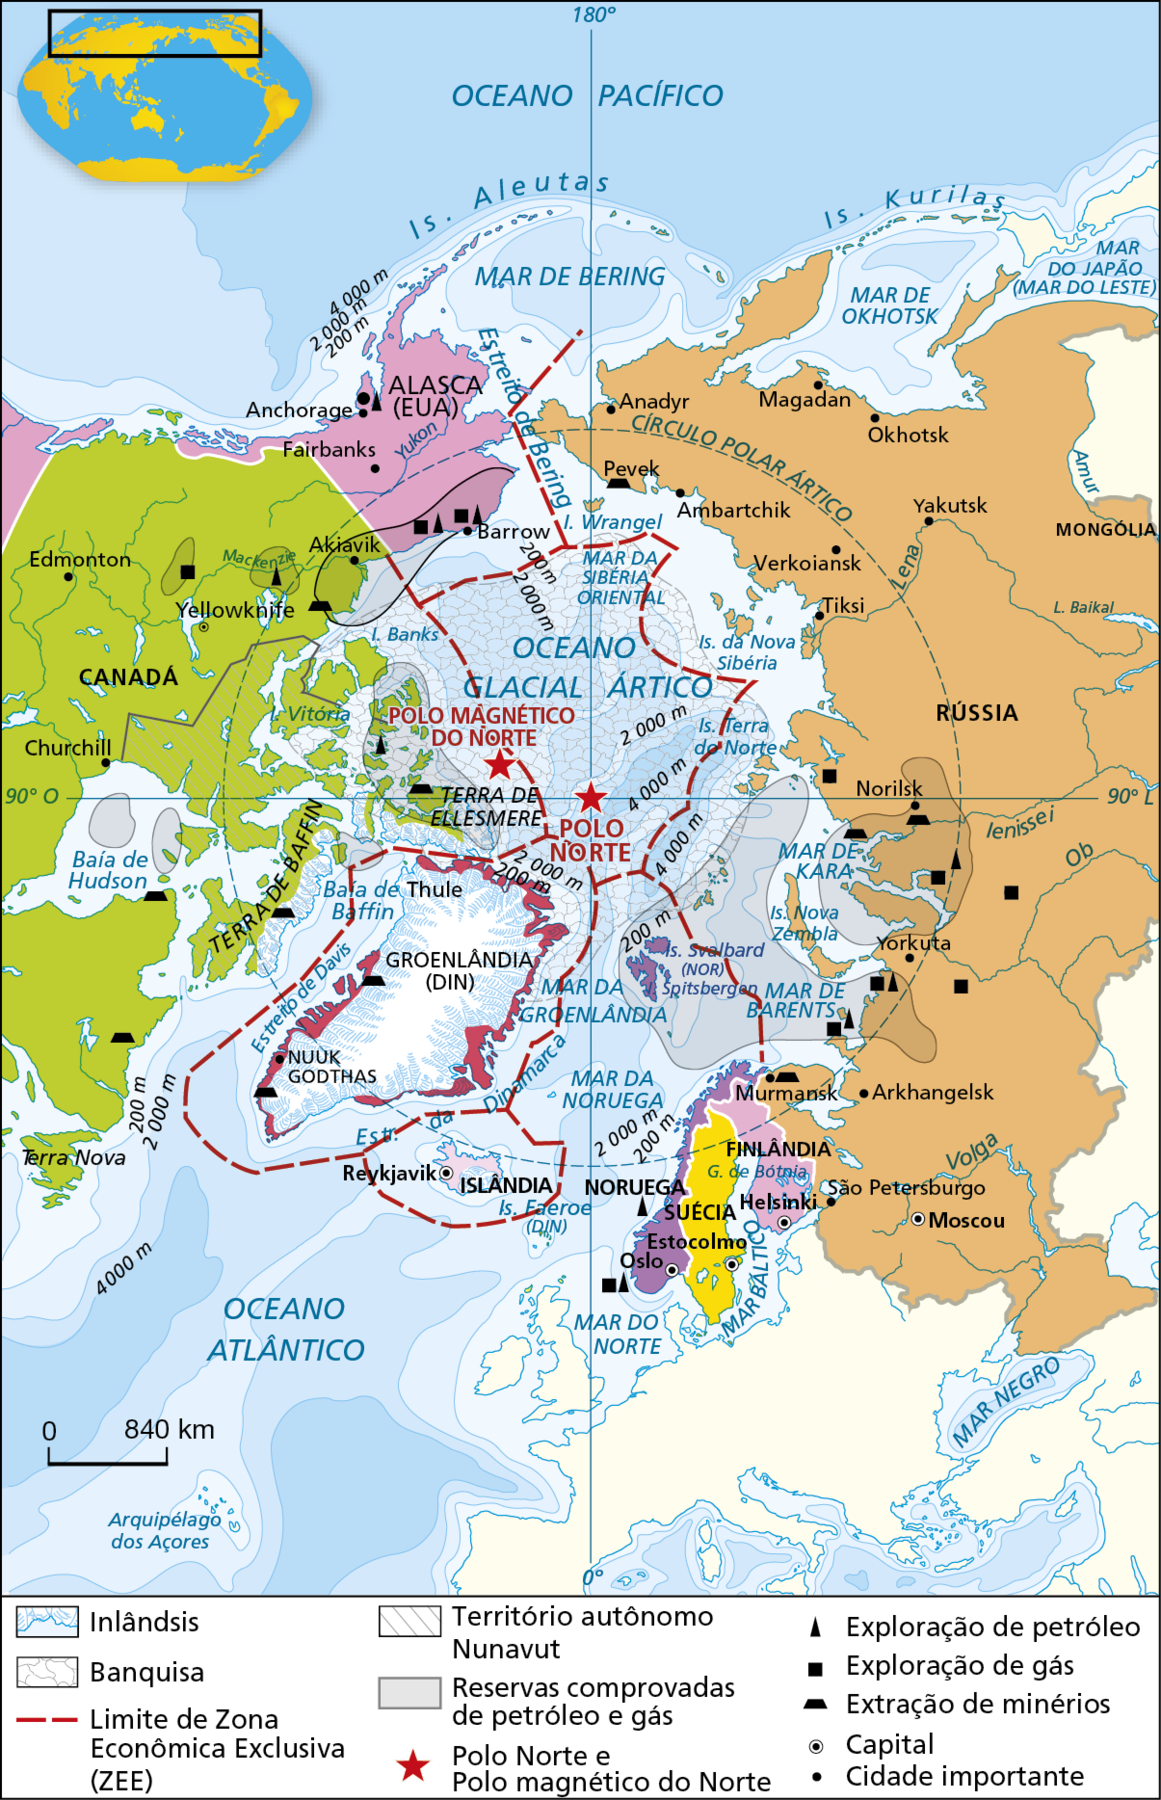 Mapa. 
Ártico: divisão política e recursos minerais. 
Mapa mostrando as divisões territoriais do Ártico, áreas de exploração, reservas comprovadas de petróleo e gás, cidades importantes, limites de zonas econômicas, banquisa e inlândsis. 
O mapa destaca a região do Ártico vista de cima. Do lado direito do mapa, a Rússia: mais ao sul, a  Noruega, a Suécia, a Finlândia e a Islândia mais  ao sul do Ártico. Do lado esquerdo, a Groenlândia (Dinamarca), terras do Canadá e Alasca (Estados Unidos).
Inlândsis estão representadas por áreas com pequenos riscos azuis    nas bordas da Groenlândia, da Terra de Baffin (Canadá) e da Terra de Ellesmere (nas proximidades do Polo Magnético Norte). Banquisas estão representadas por linhas curvas fechadas, na cor cinza, em toda área central da região ártica, sobrepondo-se à área do Oceano Glacial Ártico. Em linhas tracejadas vermelhas estão representados os Limites de Zonas Econômicas Exclusivas (ZEE) ao redor da Groenlândia, da Islândia, em torno de parte dos territórios de Rússia,  Alasca e Canadá e na parte central da região ártica. Em linhas cinzas diagonais, o Território Autônomo Nunavut, no Canadá. 
Reservas comprovadas de petróleo e gás estão destacadas na cor cinza área central ártica; no Mar de Kara e Mar de Barents, nas proximidades da Rússia; em áreas na Baía de Baffin e Baía de Hudson, próximo ao Canadá; área da Terra de Ellesmere, próximo ao polo magnético do norte; áreas do Oceano Glacial Ártico próximo ao Alasca e Canadá. 
Com uma estrela vermelha, a indicação do Polo Norte (no centro do mapa) e Polo Magnético do Norte (a noroeste da estrela do Polo Norte). 
As áreas de exploração de petróleo são indicadas por um triângulo na cor preta na Rússia, Alasca, Canadá e Noruega. 
Um quadrado na cor preta indica áreas de exploração de gás na Rússia, Alasca, Canadá e Noruega.  Um trapézio na cor preta indica locais de extração de minérios na Rússia, Canadá e Groenlândia. Um ponto preto dentro de um círculo de fundo branco indicam a localização das capitais dos países: Suécia: Estocolmo; Noruega: Oslo;  Finlândia: Helsinki; Rússia: Moscou: Islândia:  Reykjavik. 
Pontos pretos simples indicam localização de cidades importantes. No Canadá: Churchill; na Rússia: São Petersburgo. no Alasca: Fairbanks, Barrow; na Groenlândia: Nuuque Godtas. 
Na parte inferior, a escala de 0 a 840 quilômetros.